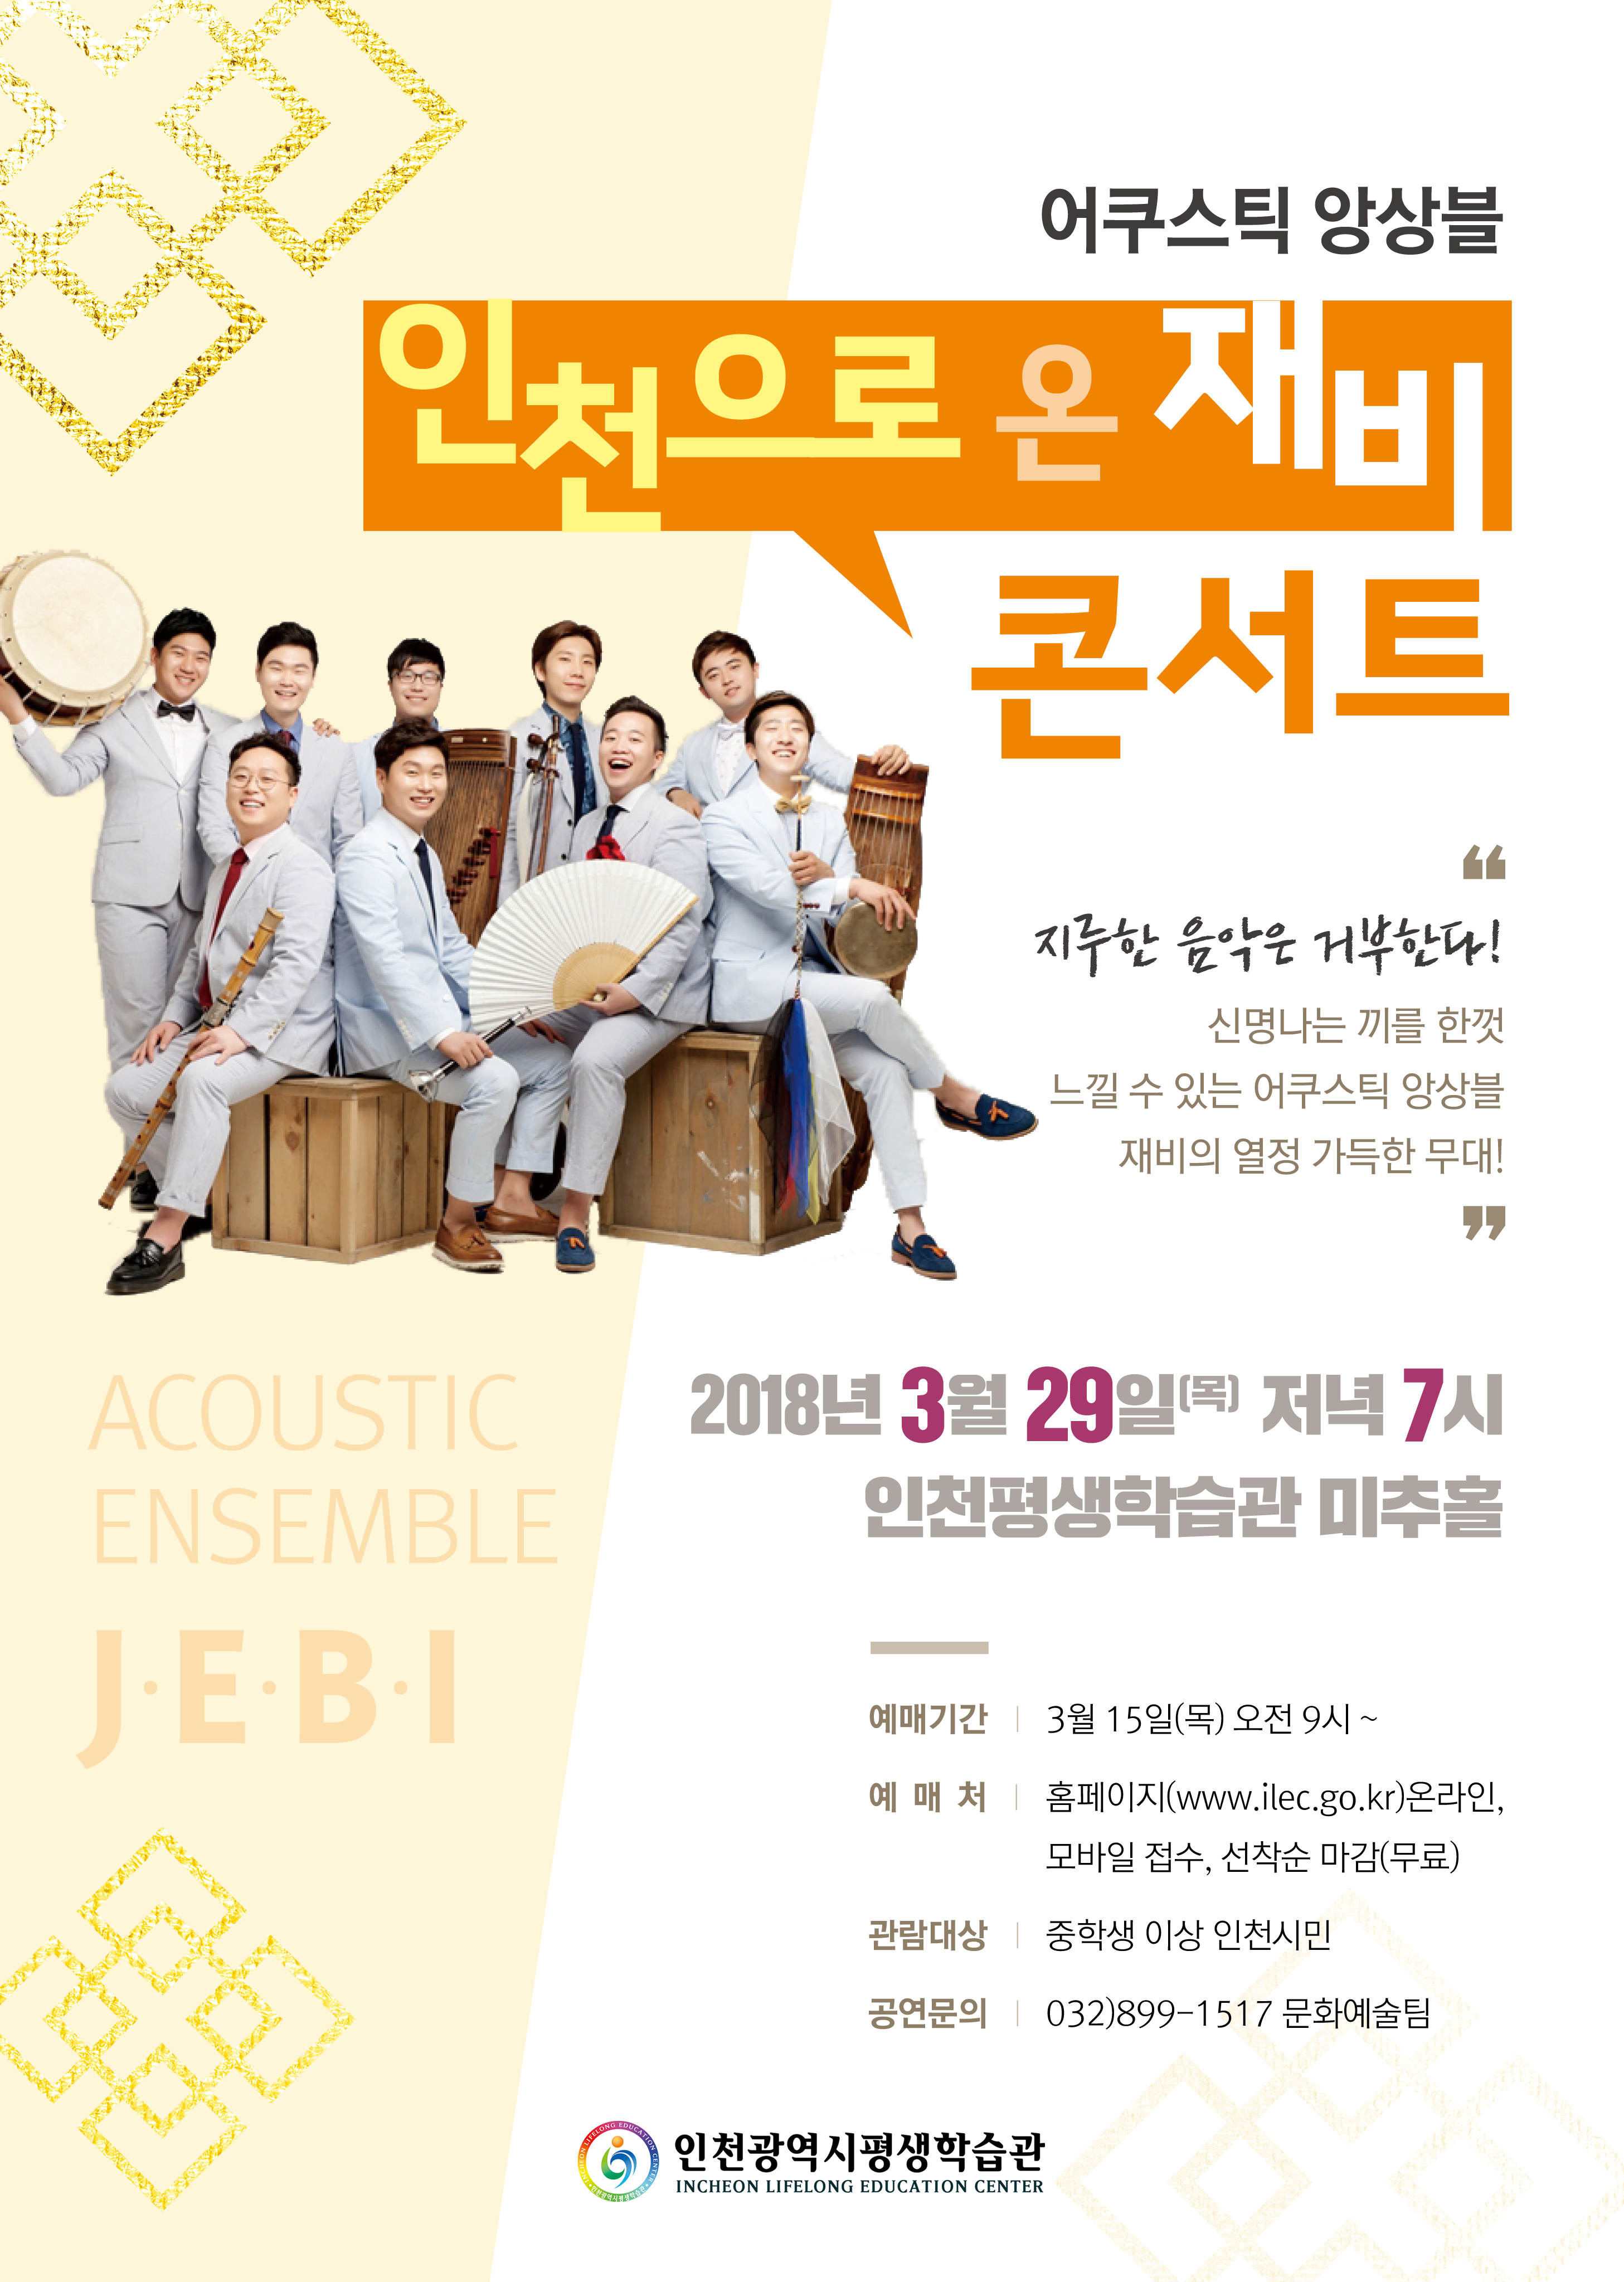 어쿠스틱 앙상블 '인천으로 온 재비'콘서트 관련 포스터 - 자세한 내용은 본문참조